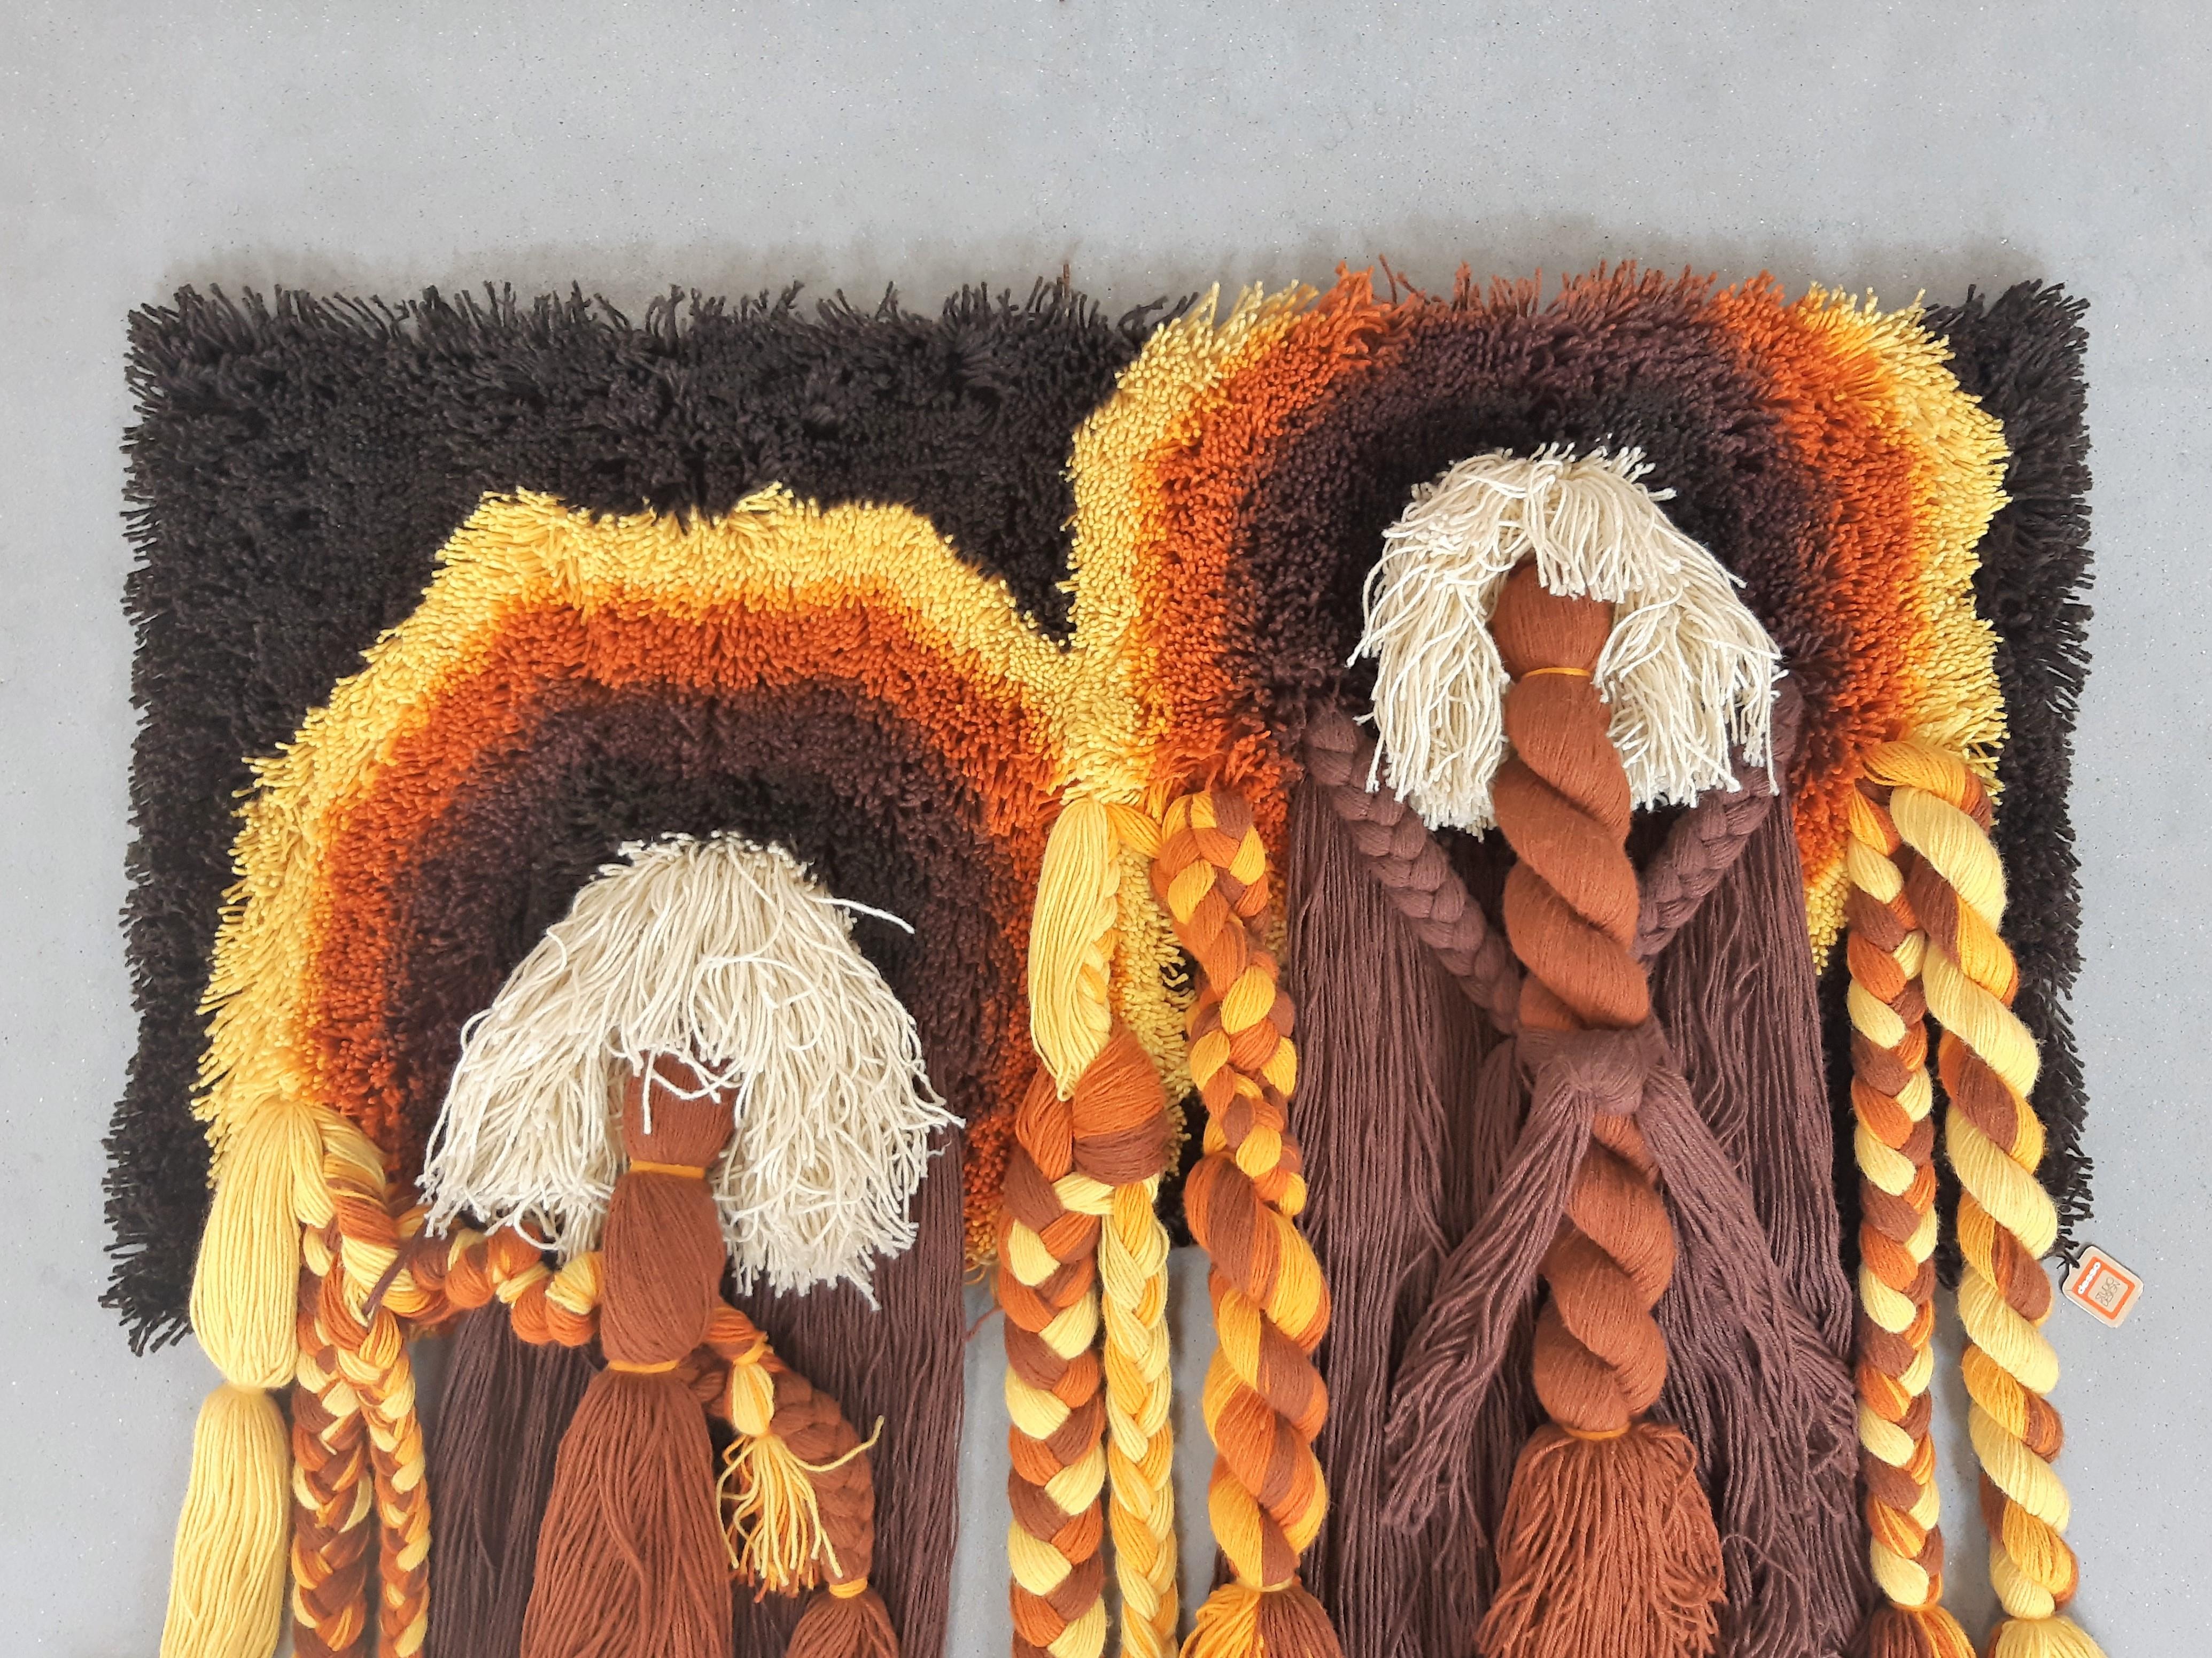 Ce fantastique tapis mural a été fabriqué dans les années 1970 par Desso, un important fabricant de tapis de qualité aux Pays-Bas. Il est fait de polyacryl et résulte d'une technique de tissage de haute qualité. Ce tapis noué en macramé à poils